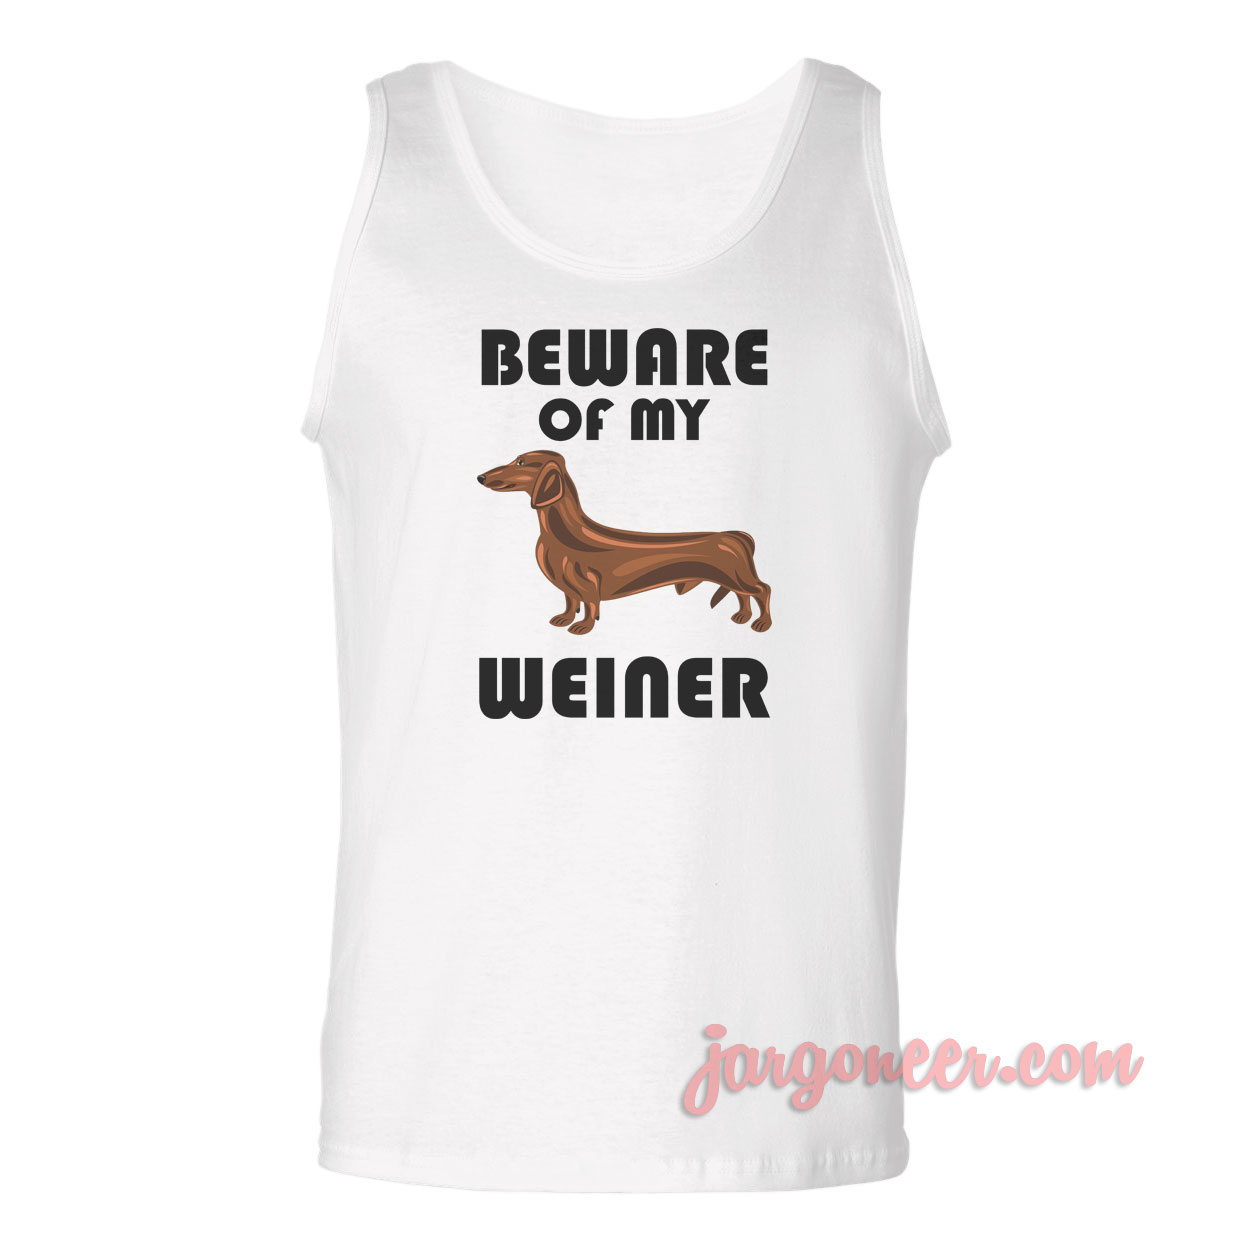 Beware Of My Weiner - Shop Unique Graphic Cool Shirt Designs